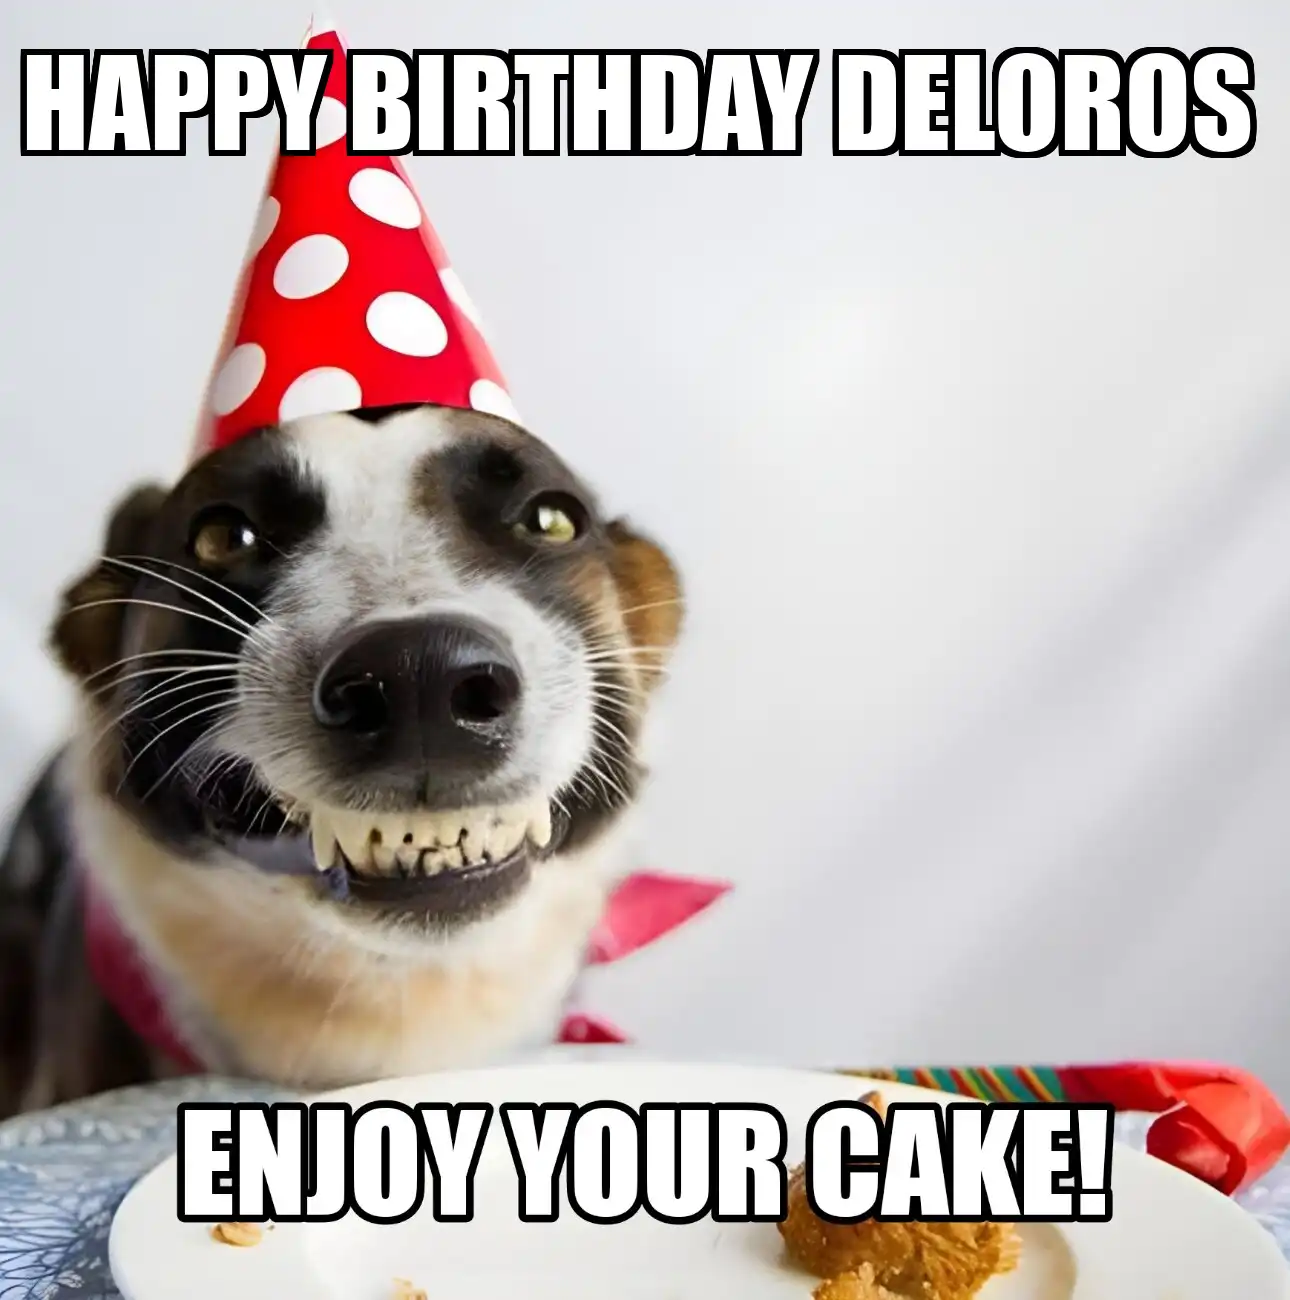 Happy Birthday Deloros Enjoy Your Cake Dog Meme